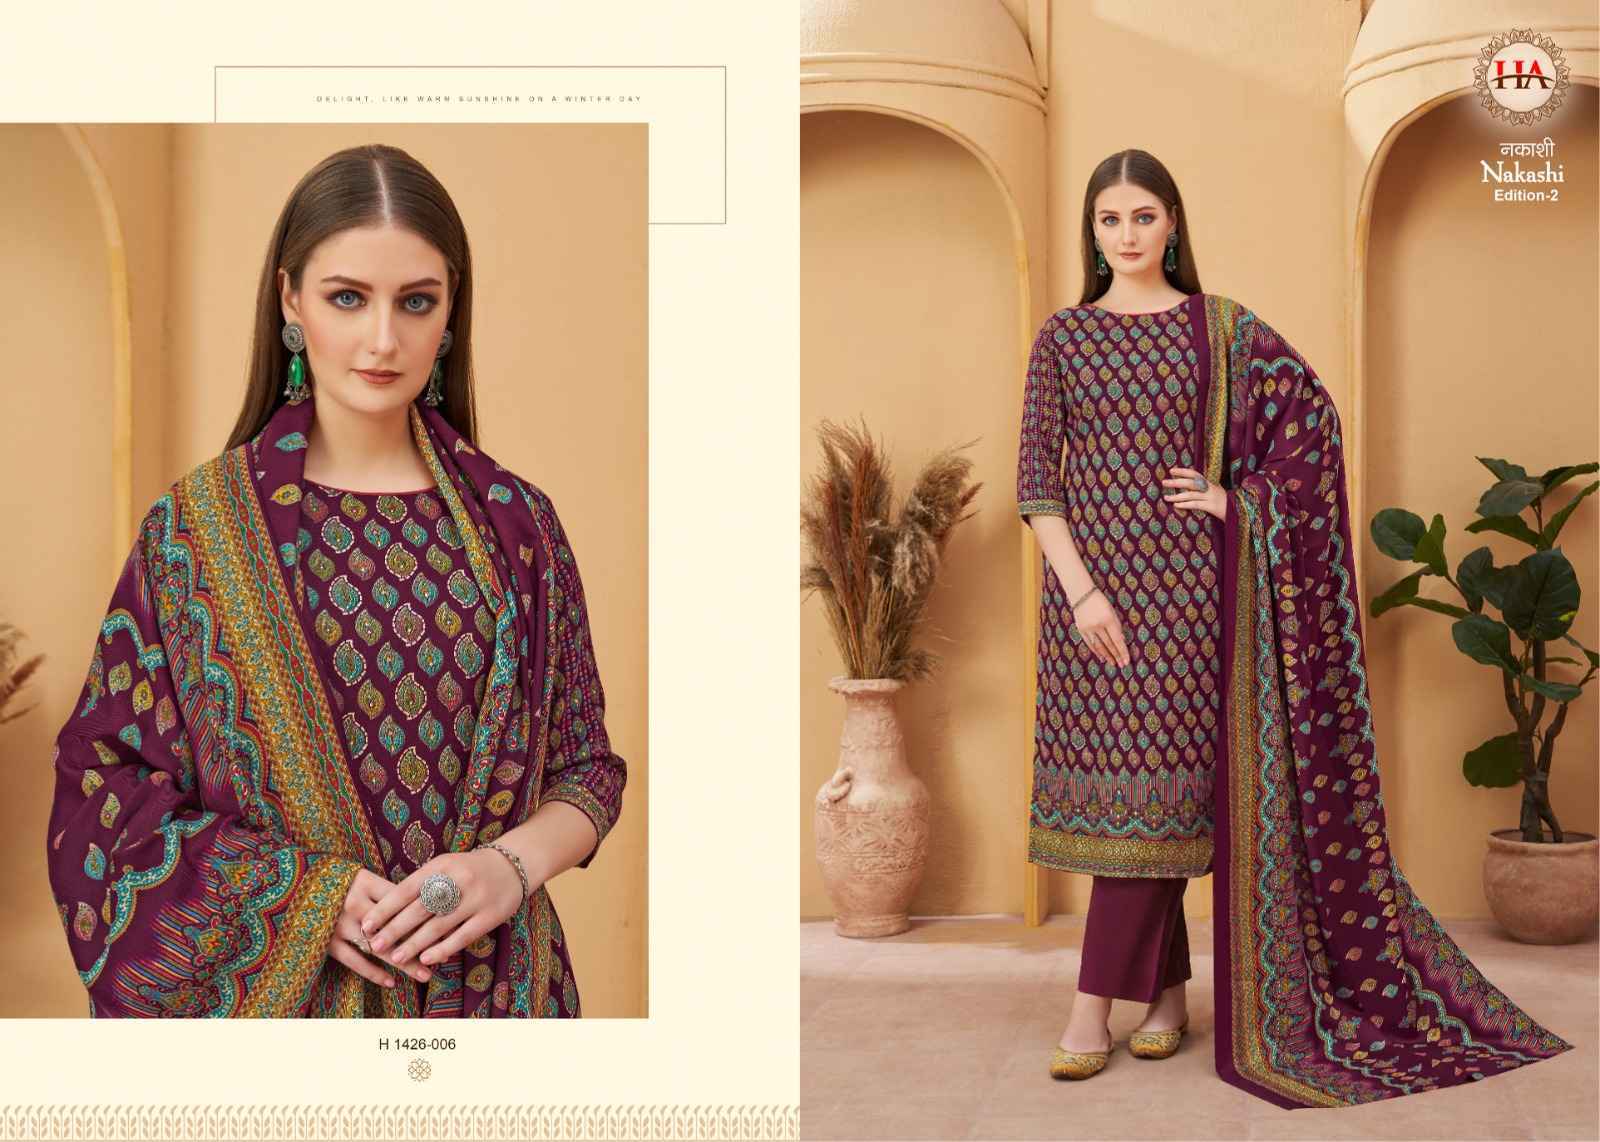 Harshit Fashion Hub Nakashi Vol 2 Pashmina Dress Material 8 pcs Catalogue